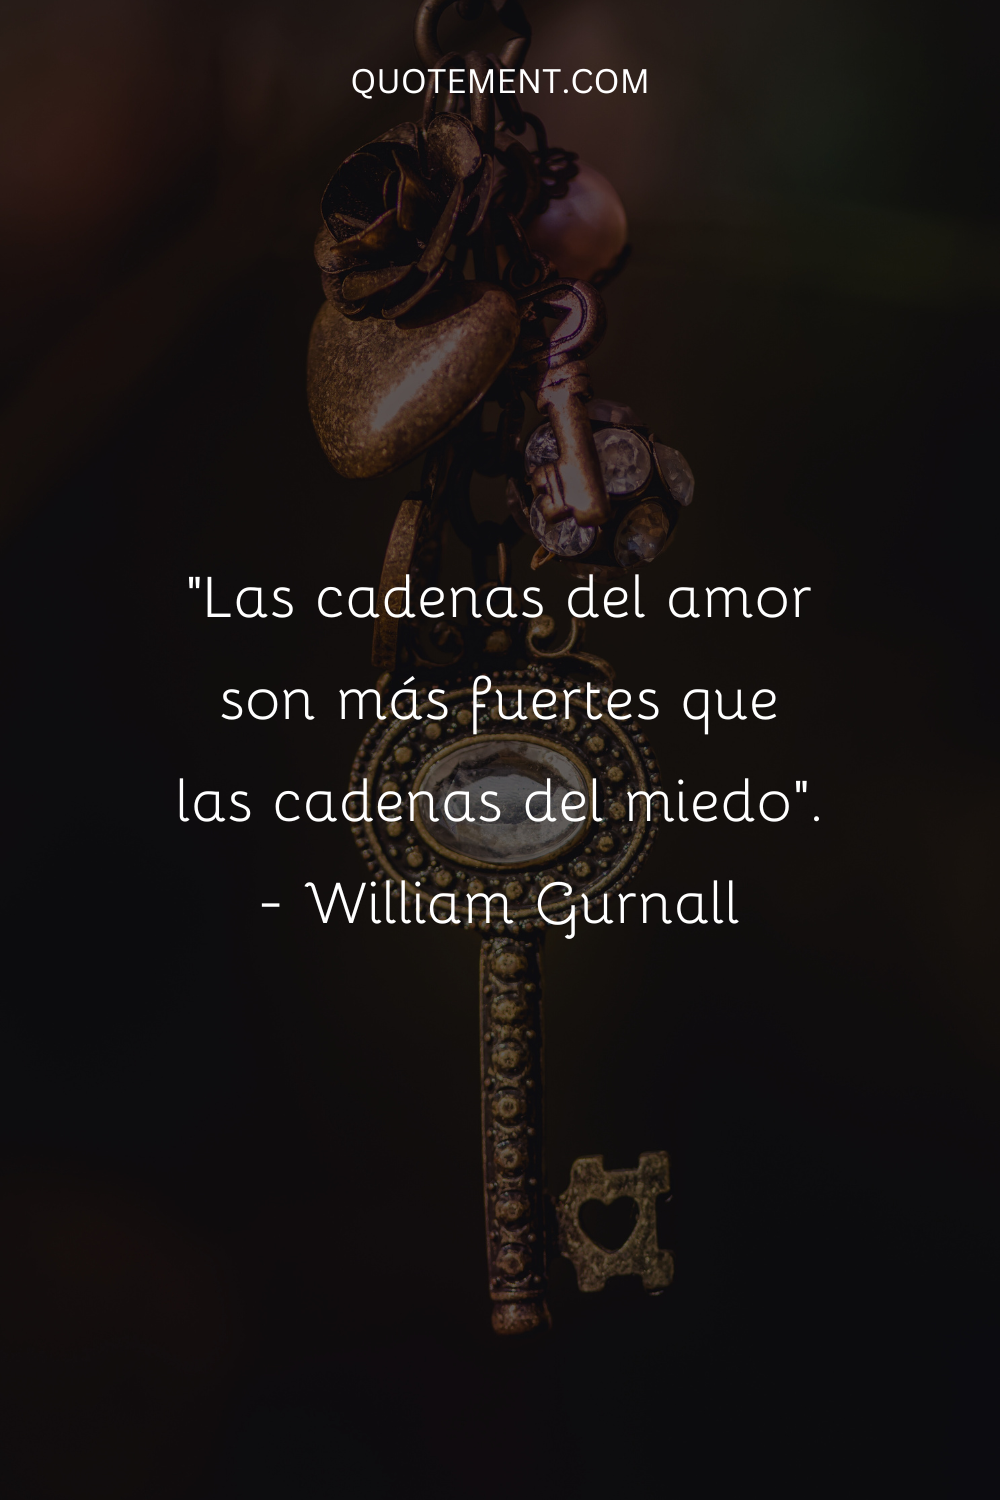 "Las cadenas del amor son más fuertes que las cadenas del miedo". - William Gurnall